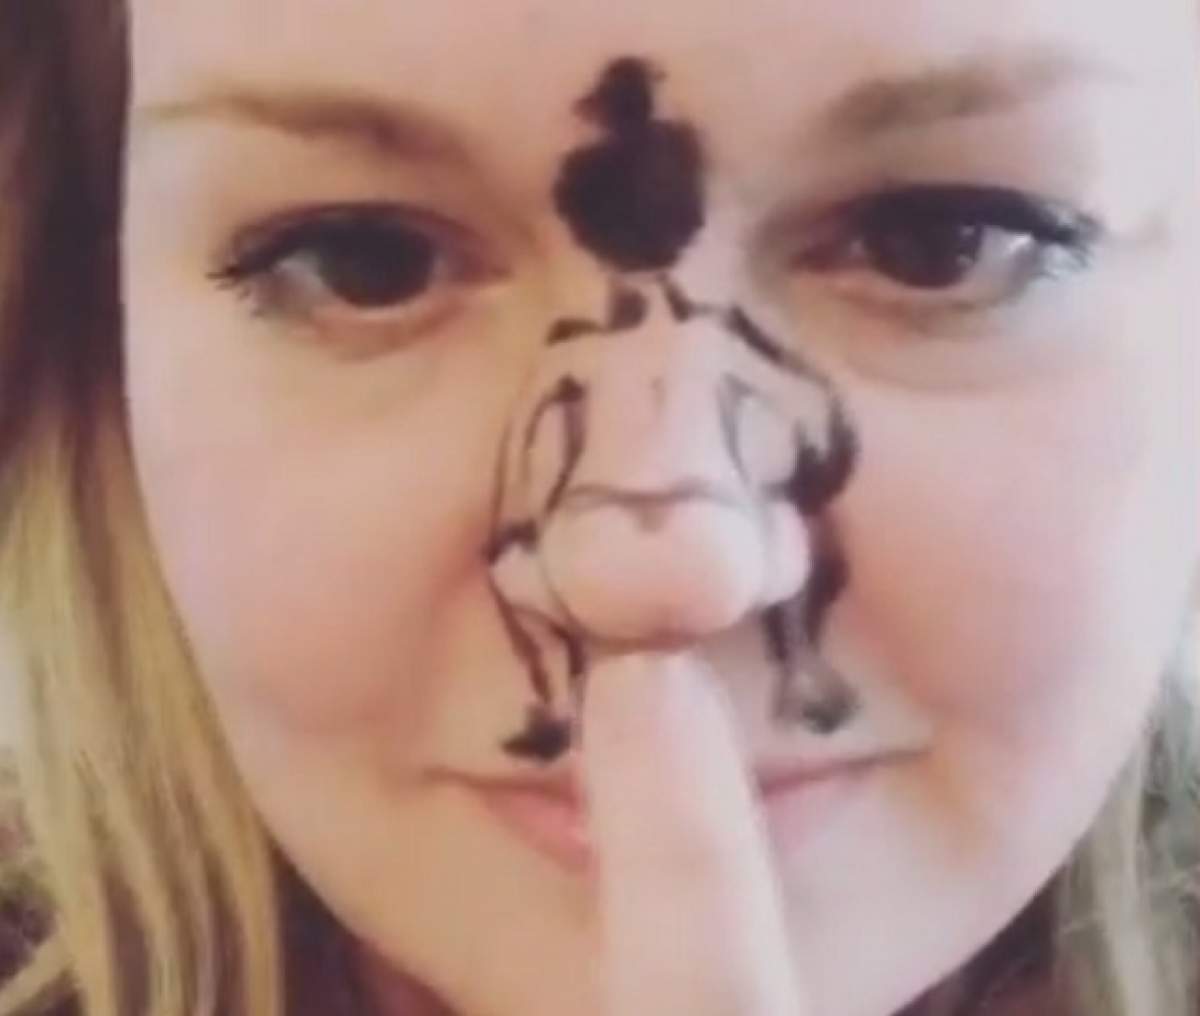 VIDEO / Şi-a desenat un trup de femeie pe nas şi apoi a dat drumul la muzică! Imaginile surprinse fac furori pe internet